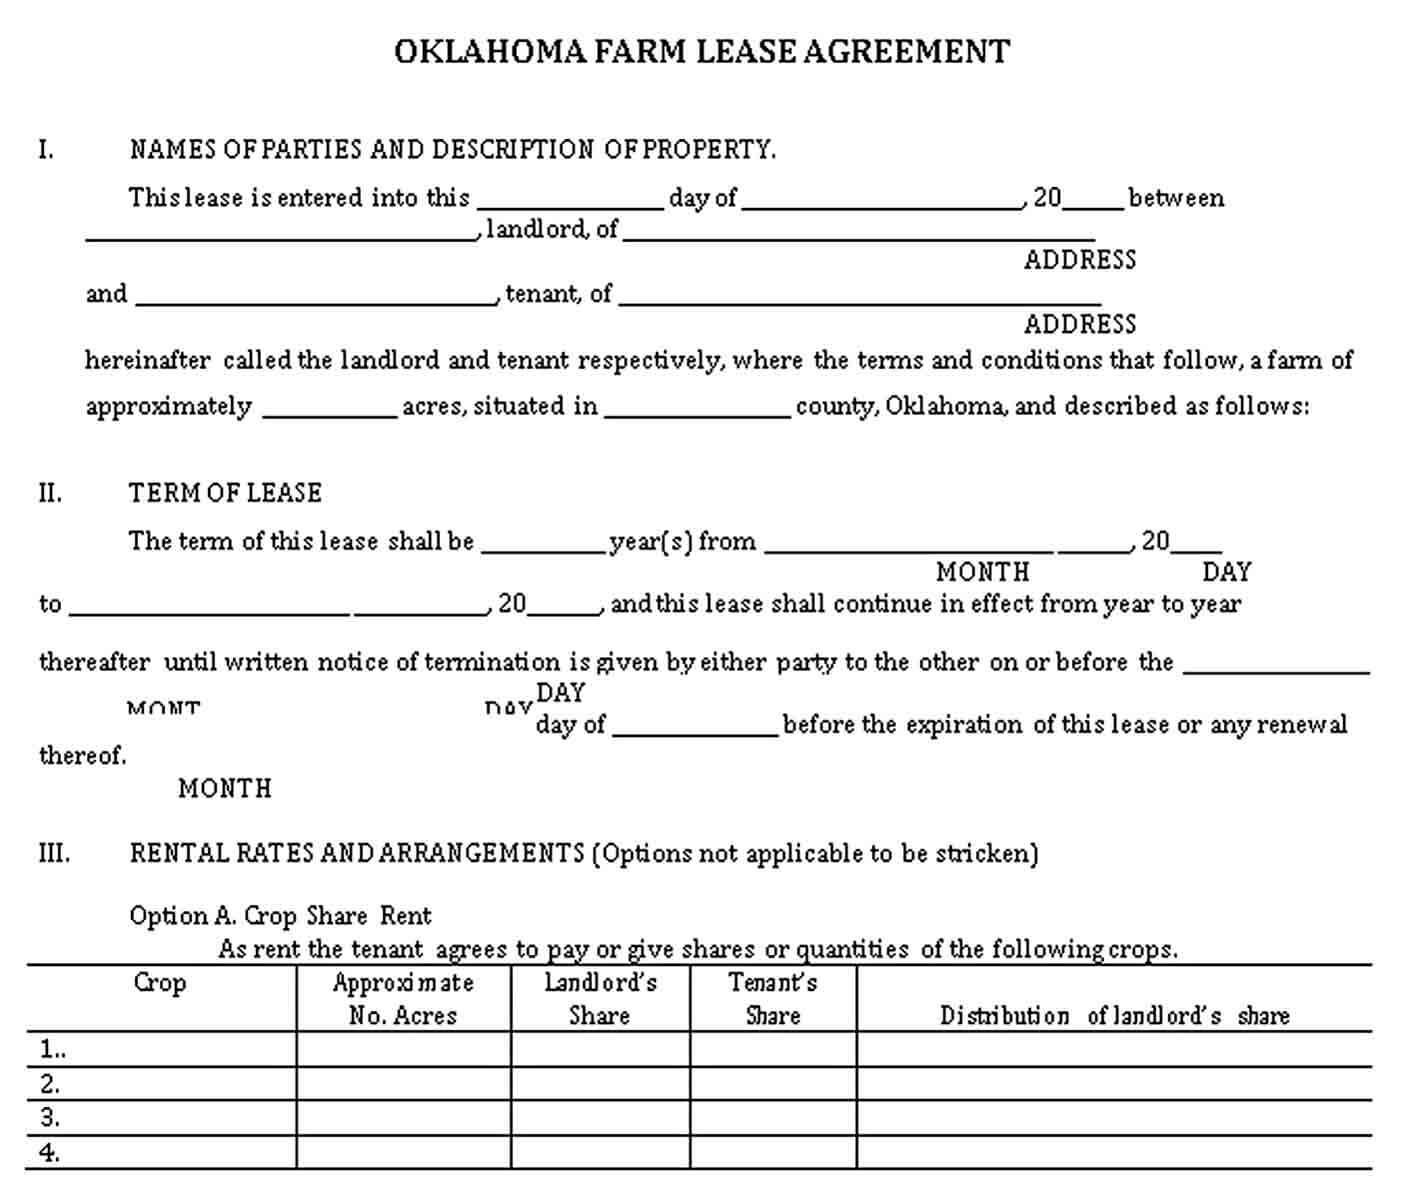 Sample Oklahoma Farm Lease Agreement